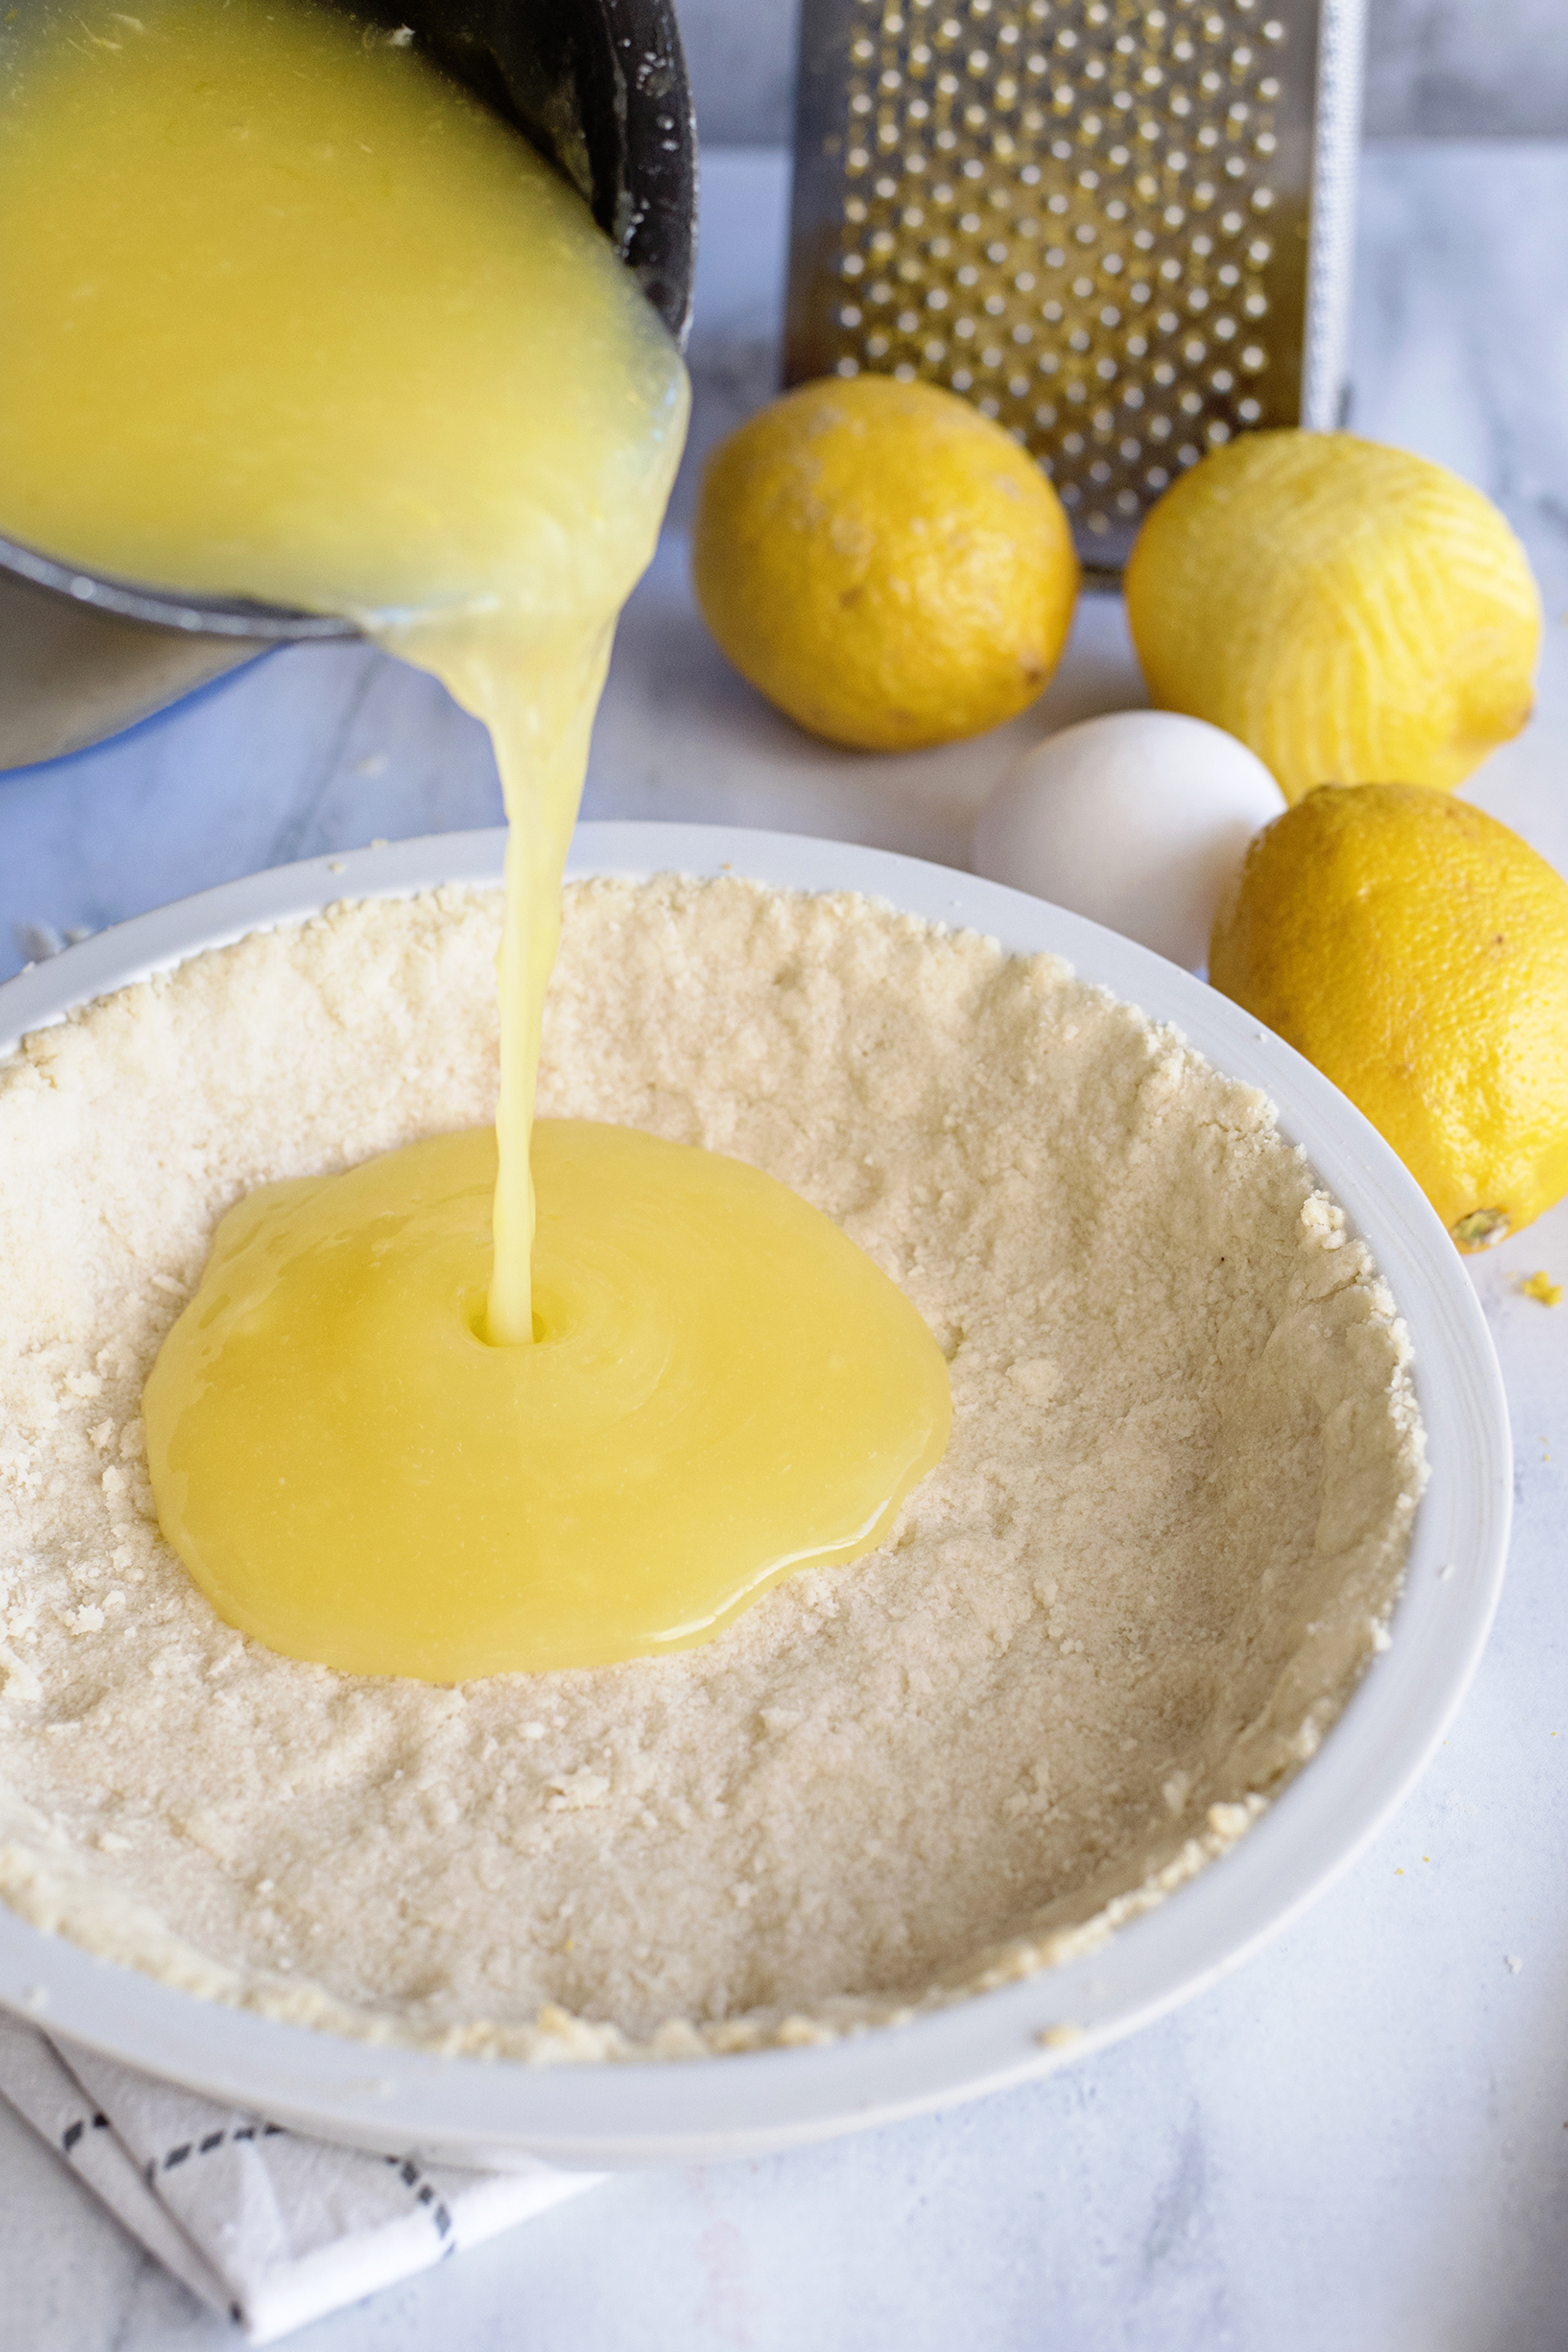 The Best Sugar Cookie Lemon Pie